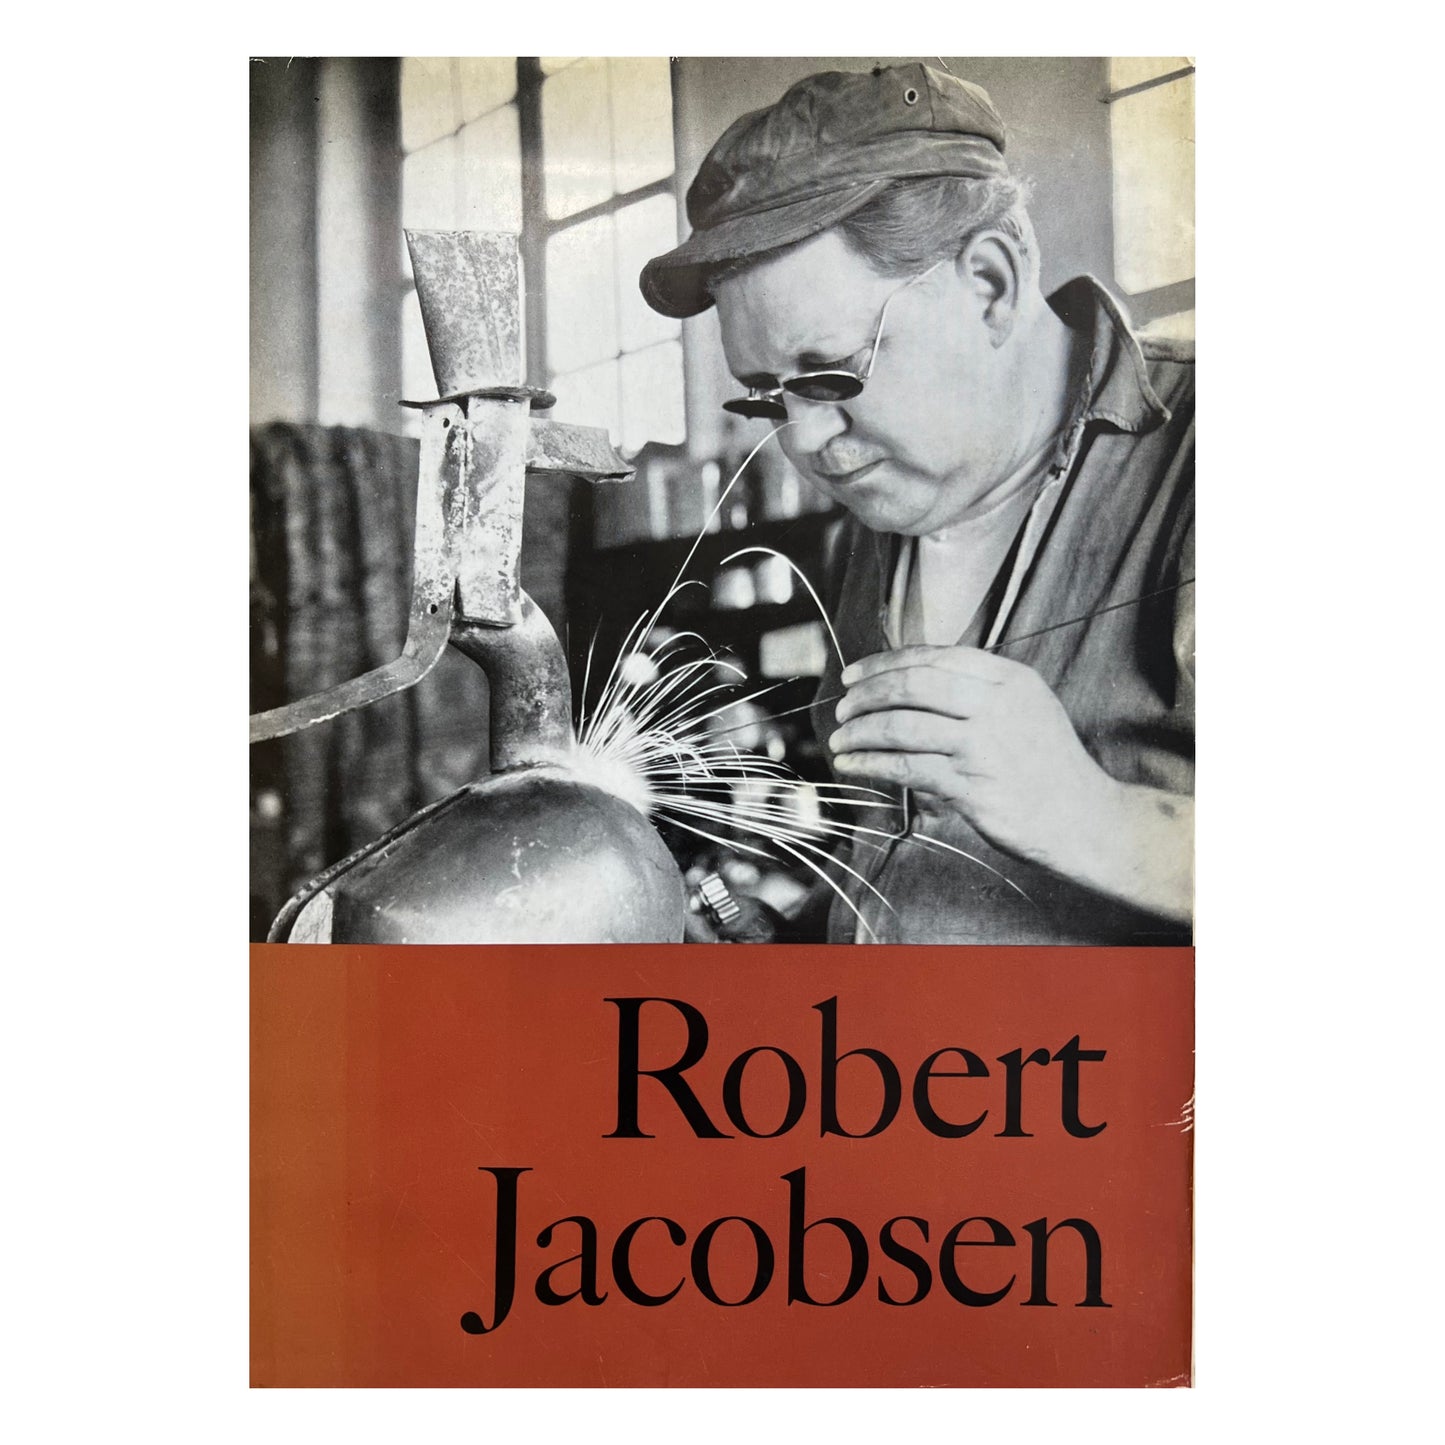 Ernst Mentze. "Robert Jacobsen", 1961